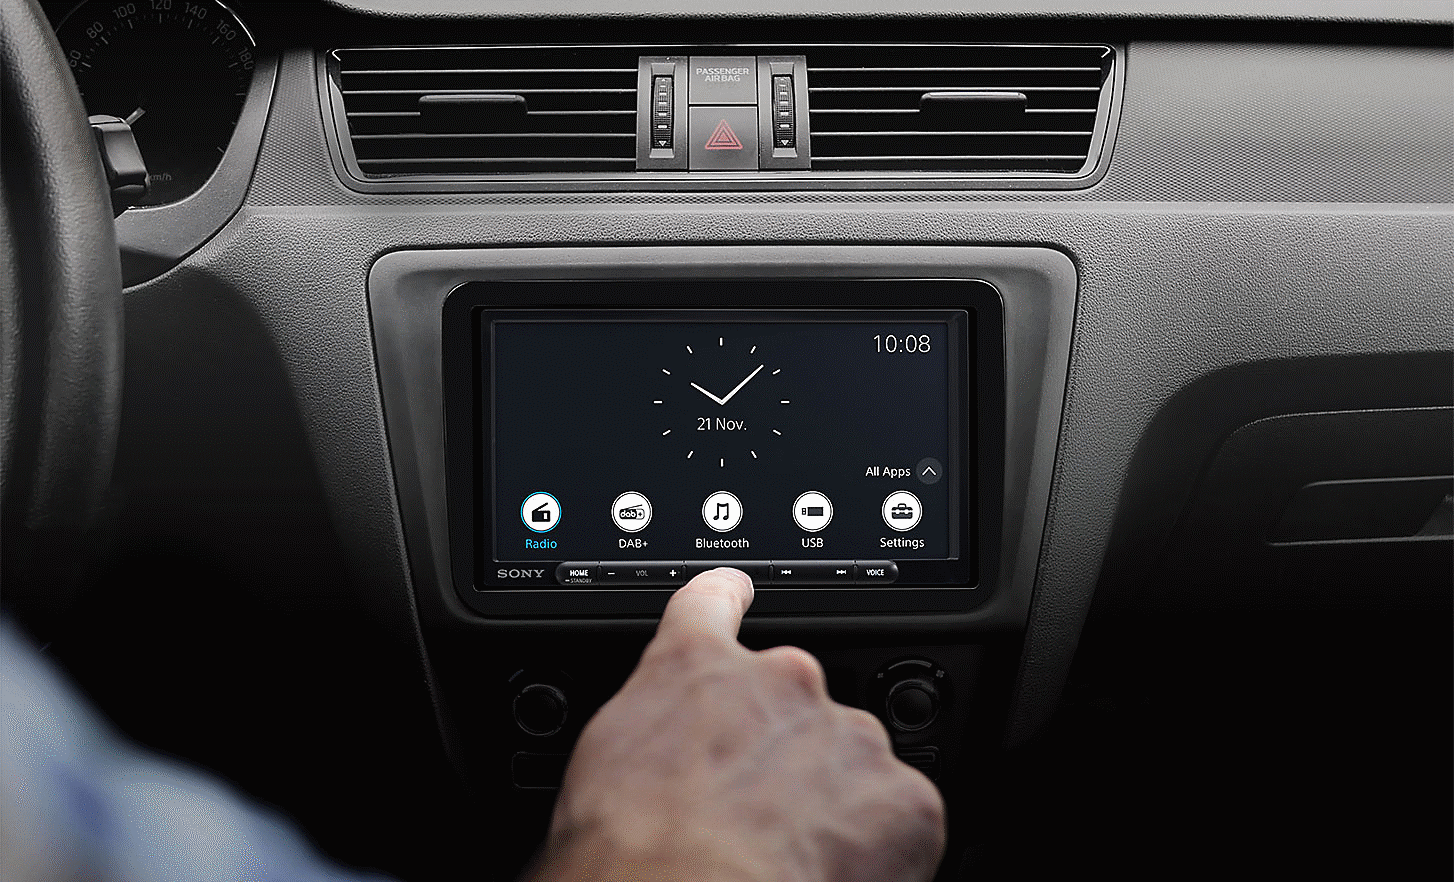 Bilde av XAV-AX4050 på et dashbord med en klokke og flere knapper på skjermen, og en hånd i forgrunnen